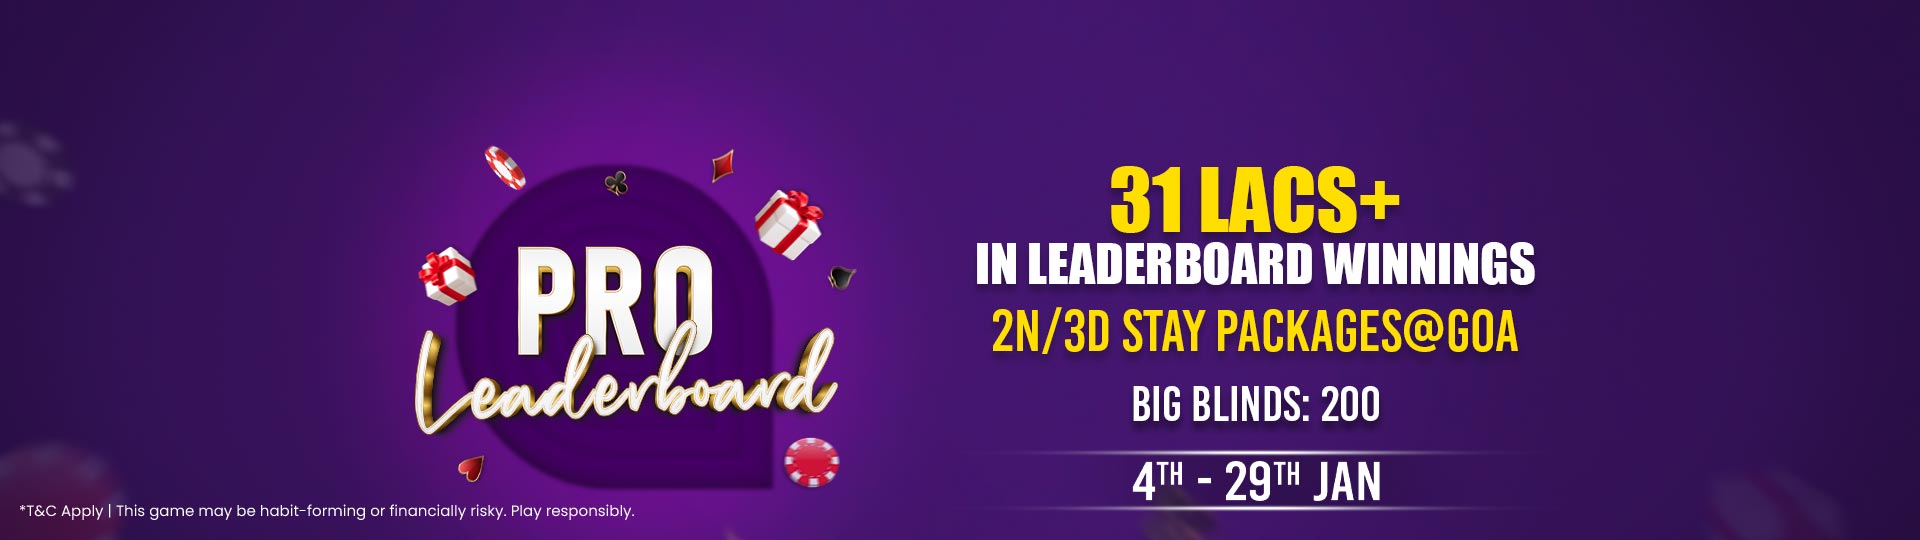 Adda52|Online|Poker|Pro Leaderboard|January